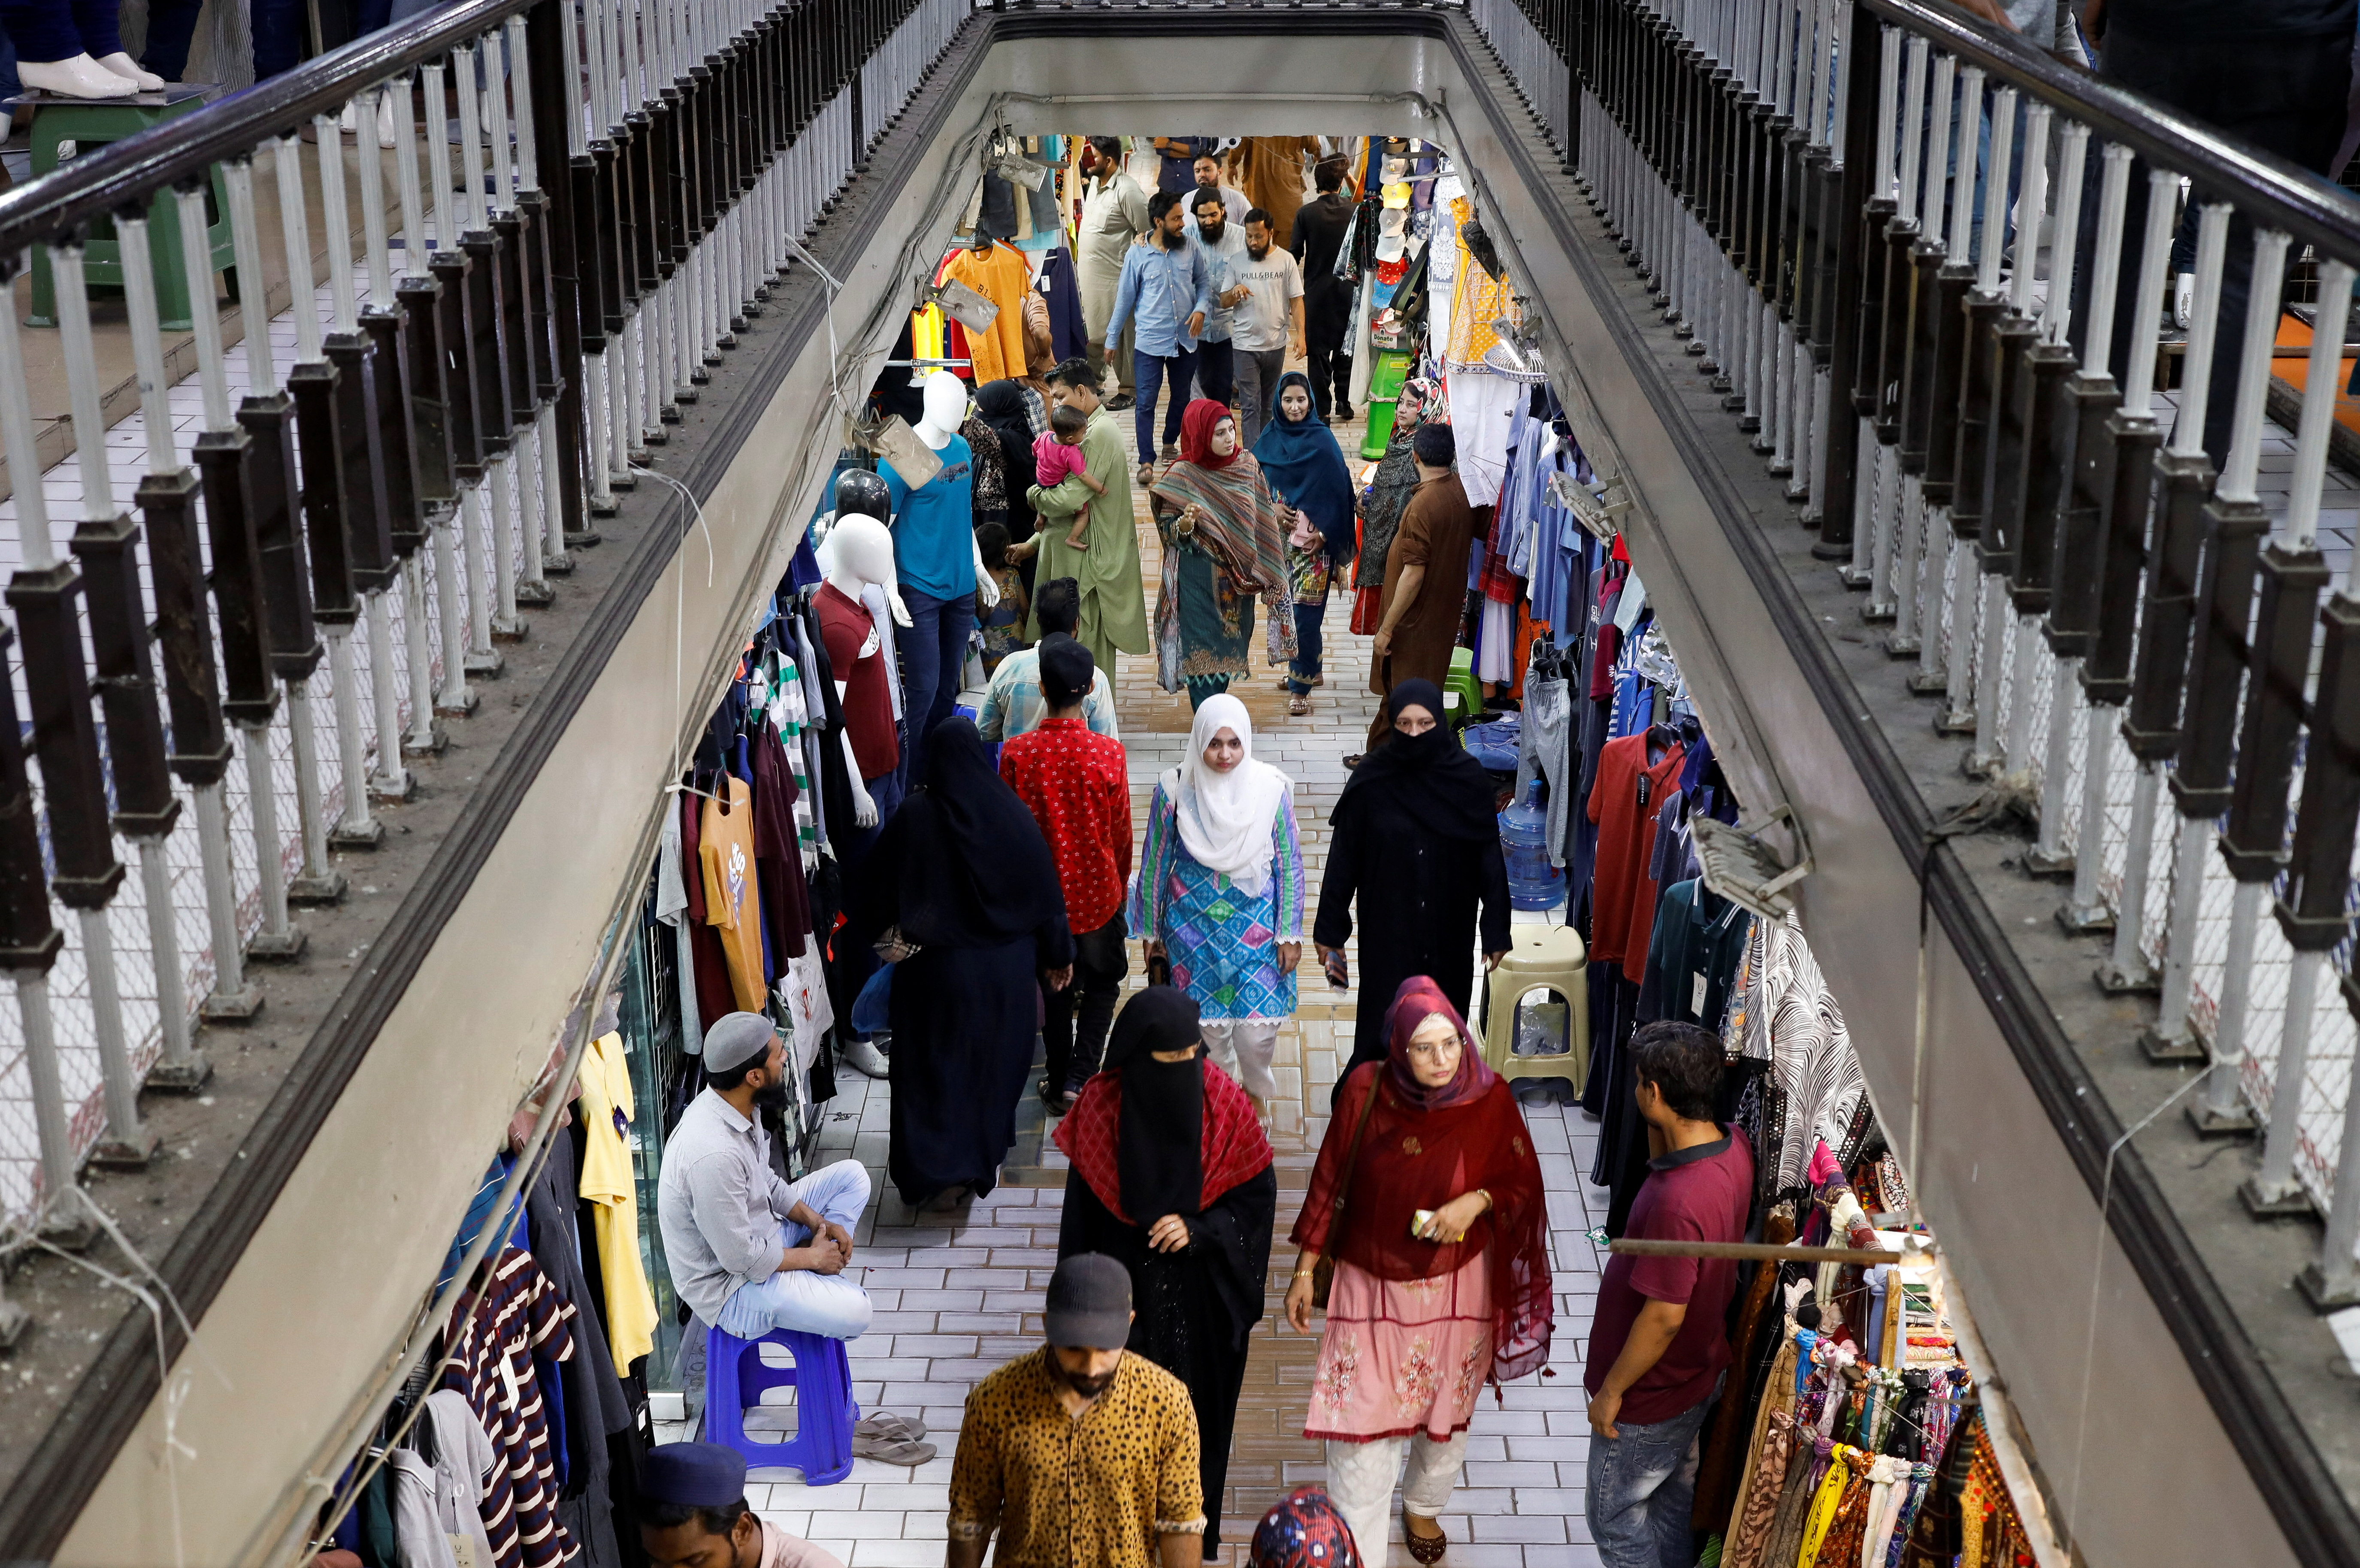 People walk as they shop in a market, ahead of Eid al-Fitr celebrations in Karachi